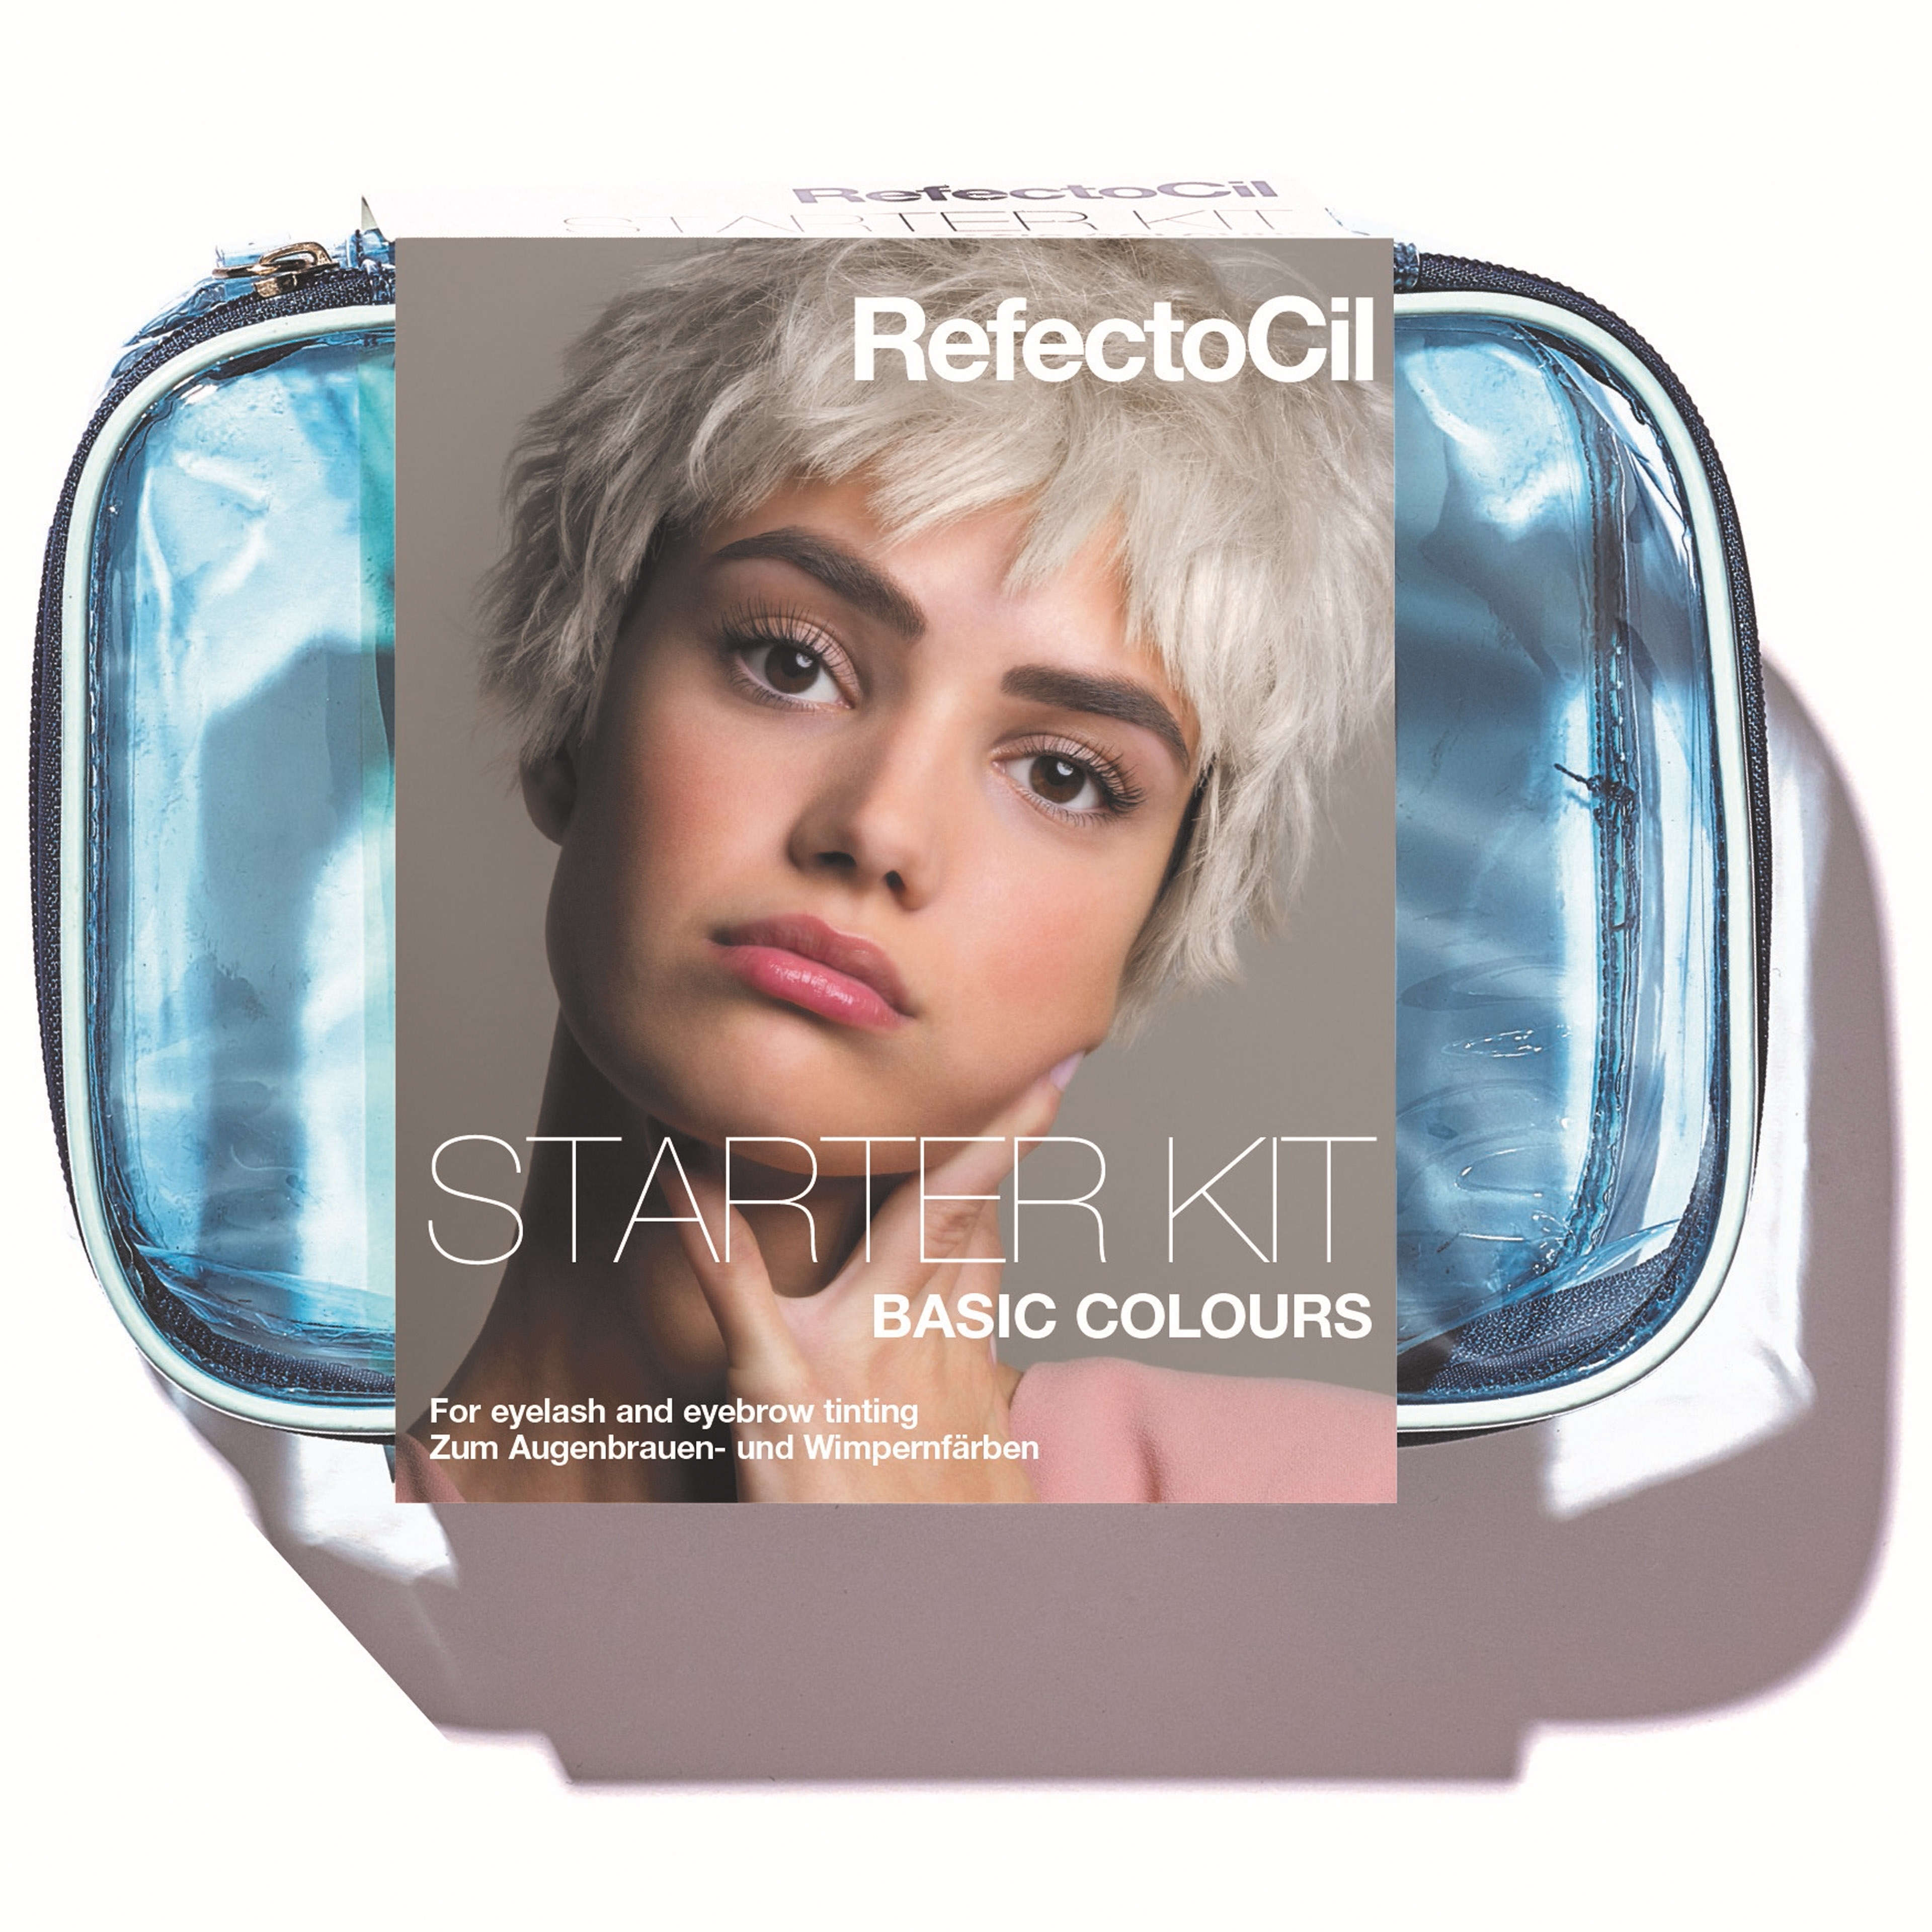 RefectoCil Starter Kit Basic Colours